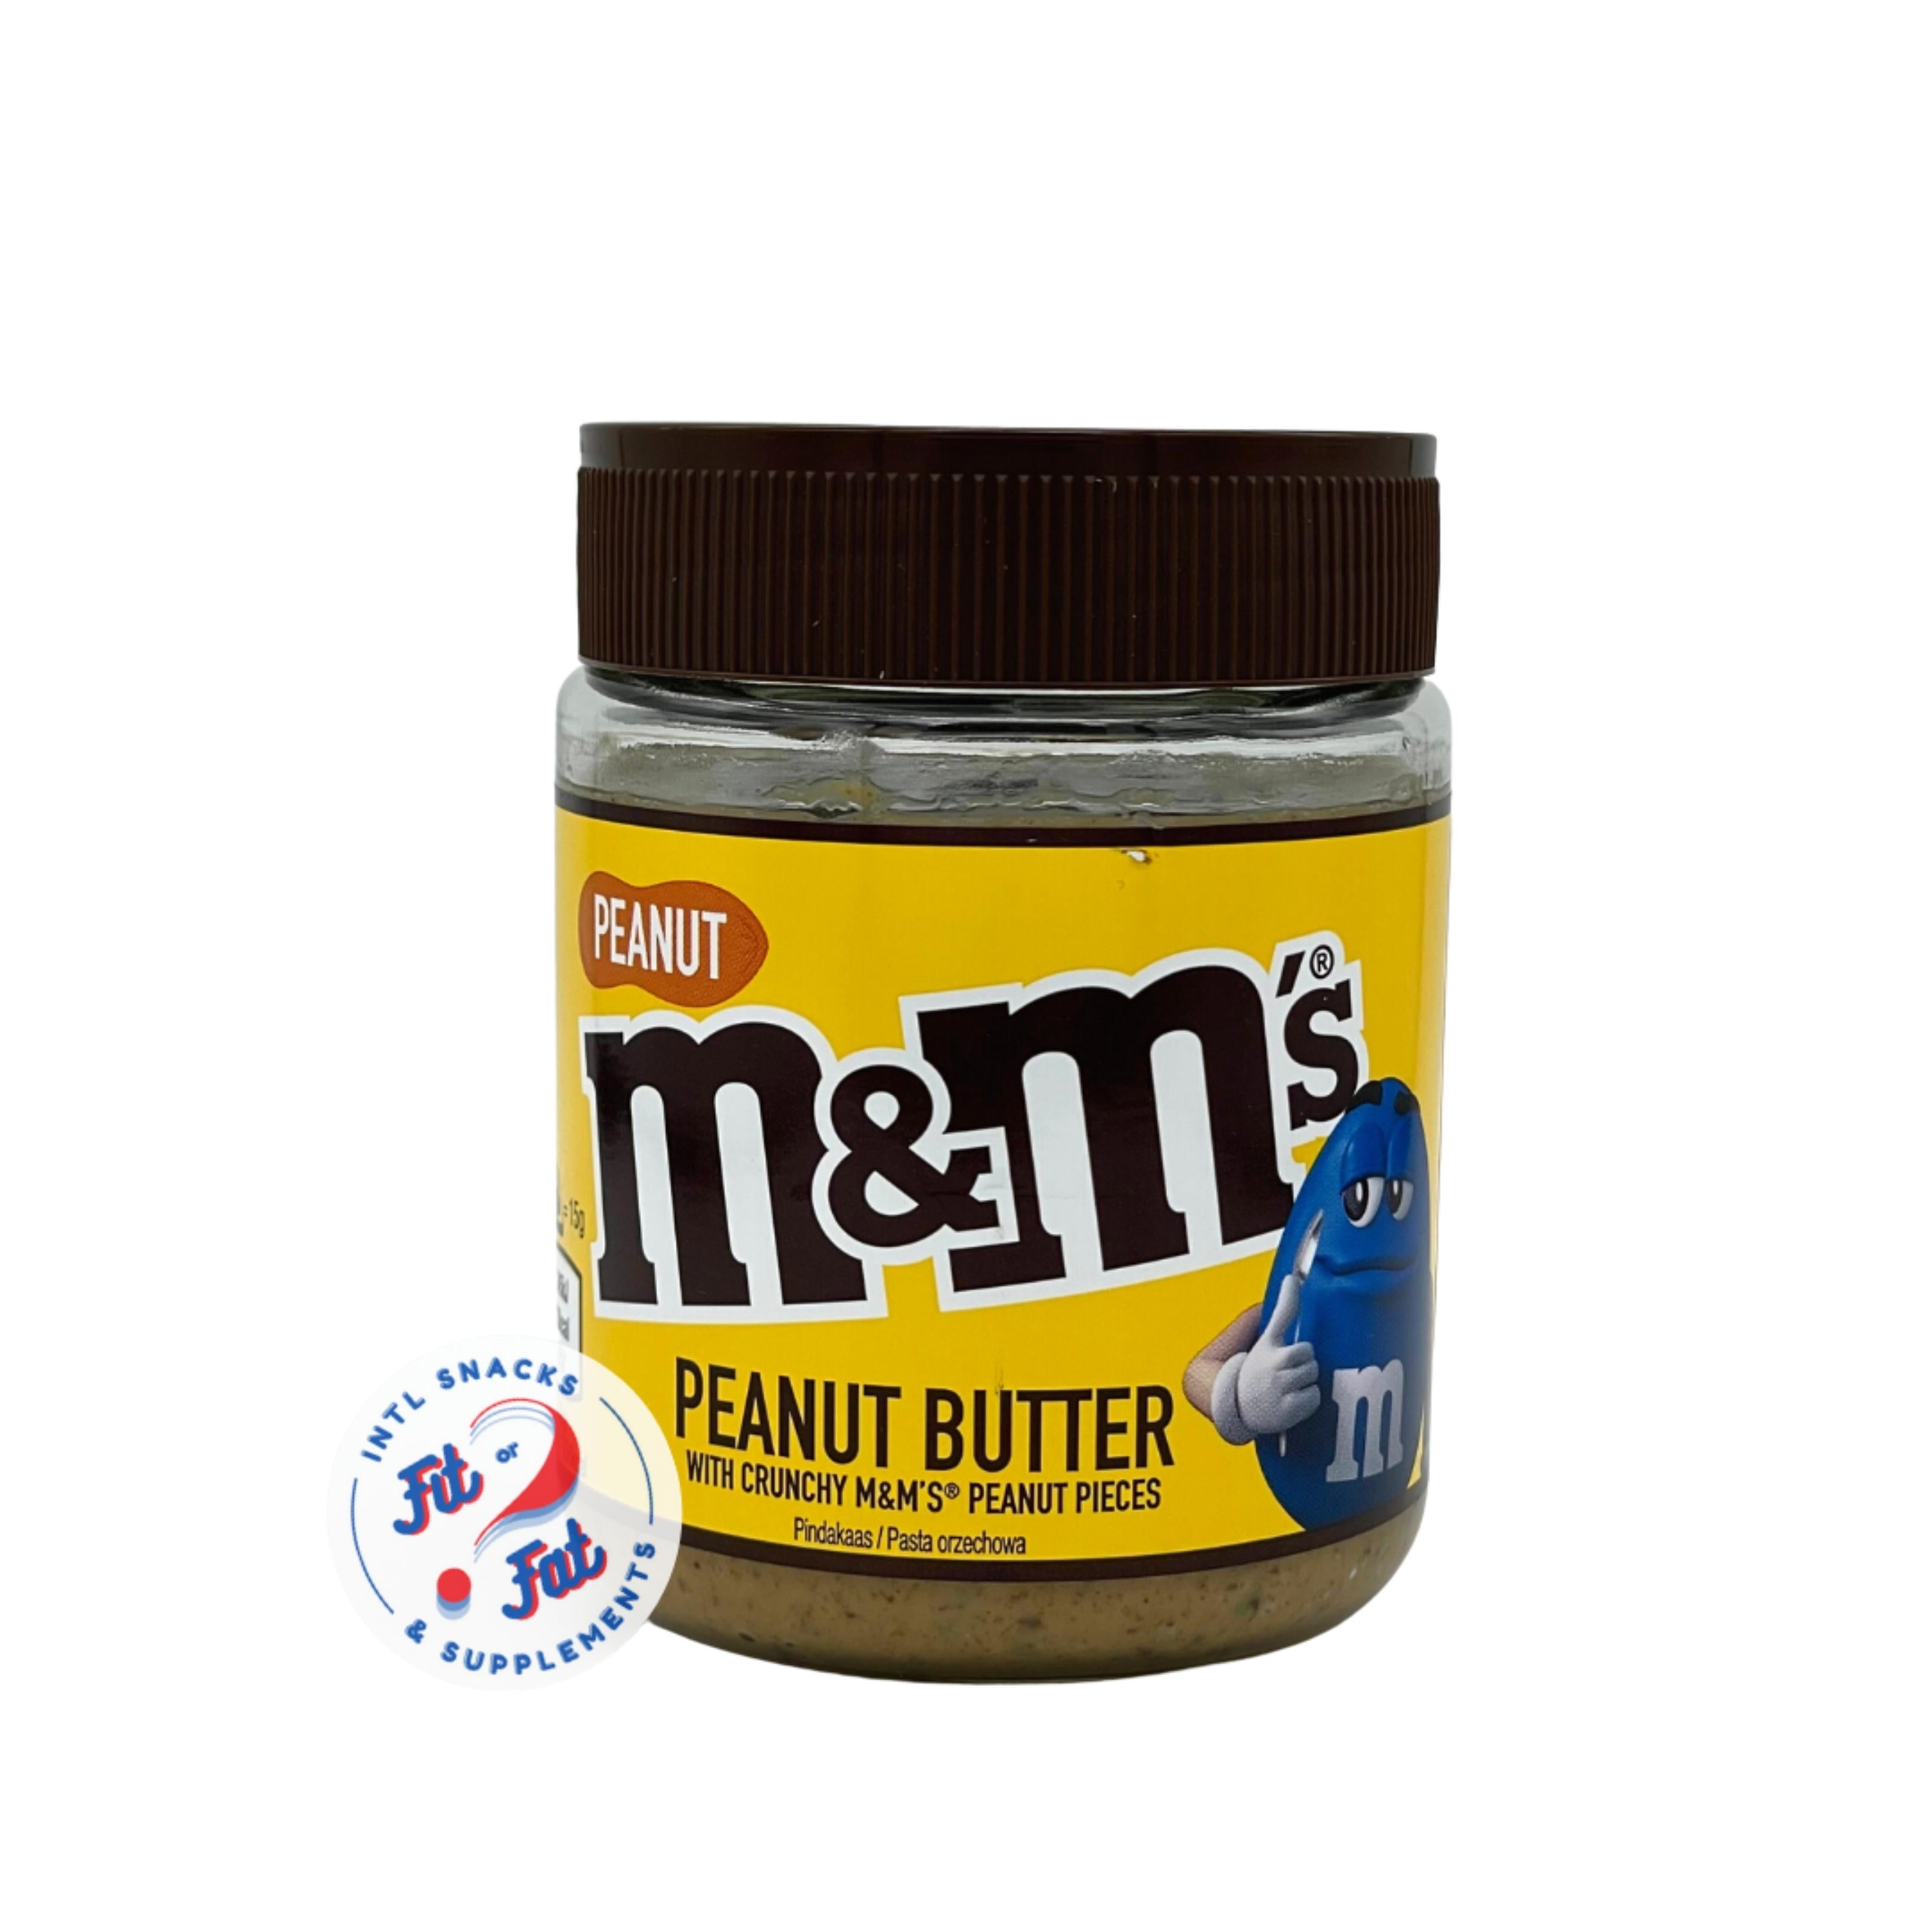 M&M's Peanut Butter crunchy spread – Acquista Online al Miglior Prezzo -  Fit or Fat Market